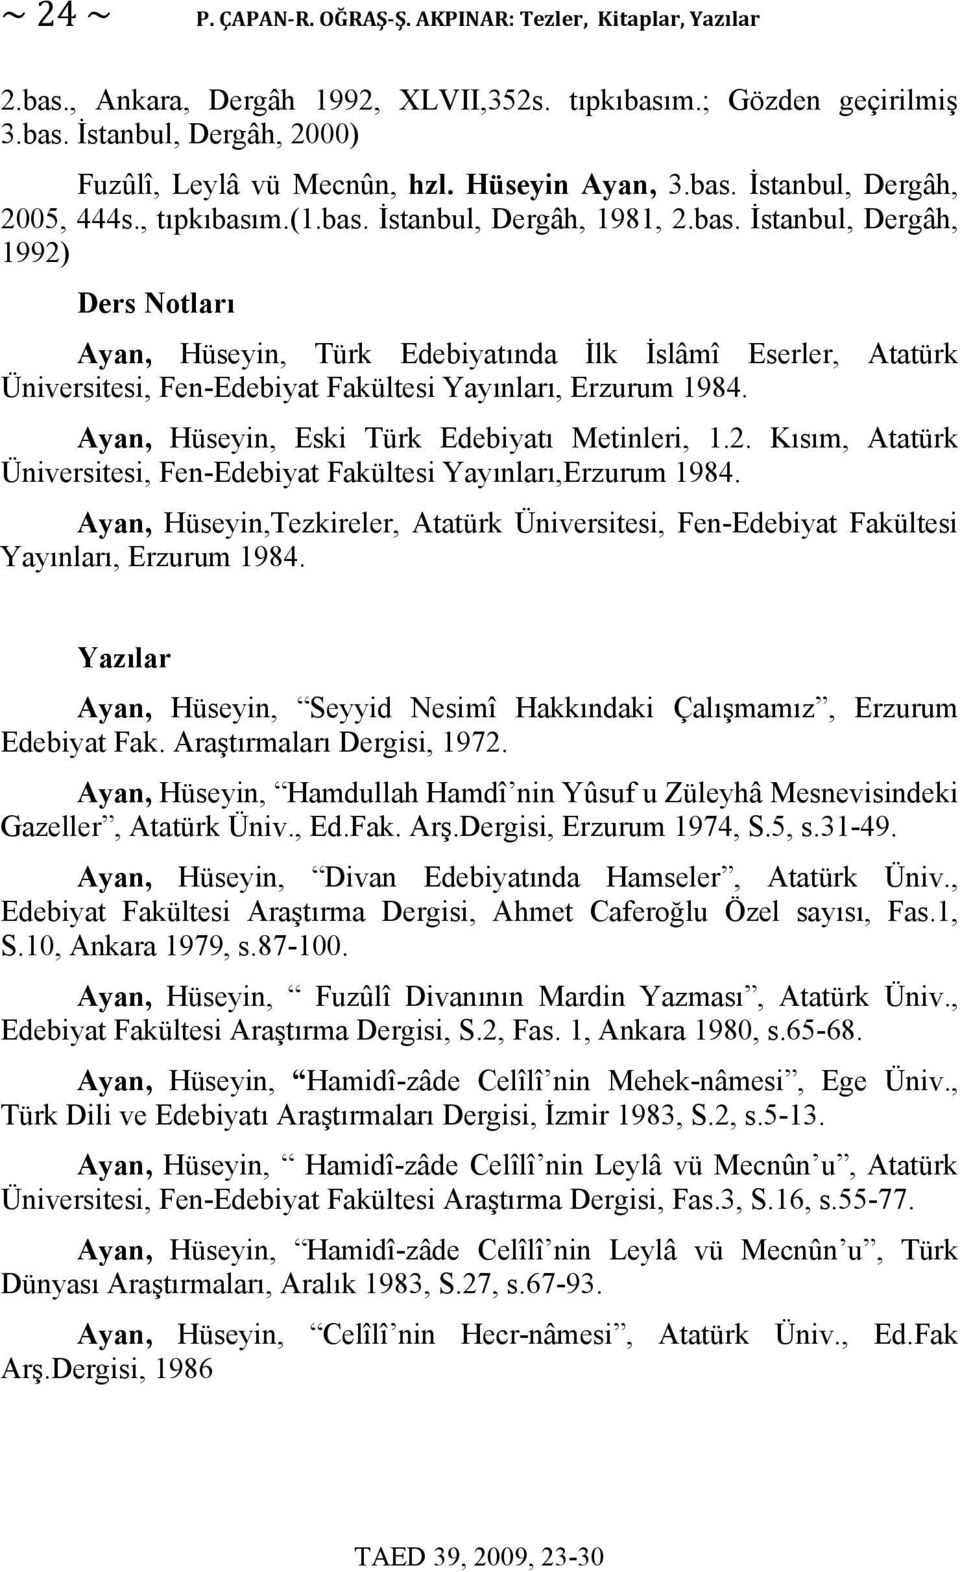 Ayan, Hüseyin, Eski Türk Edebiyatı Metinleri, 1.2. Kısım, Atatürk Üniversitesi, Fen-Edebiyat Fakültesi Yayınları,Erzurum 1984.